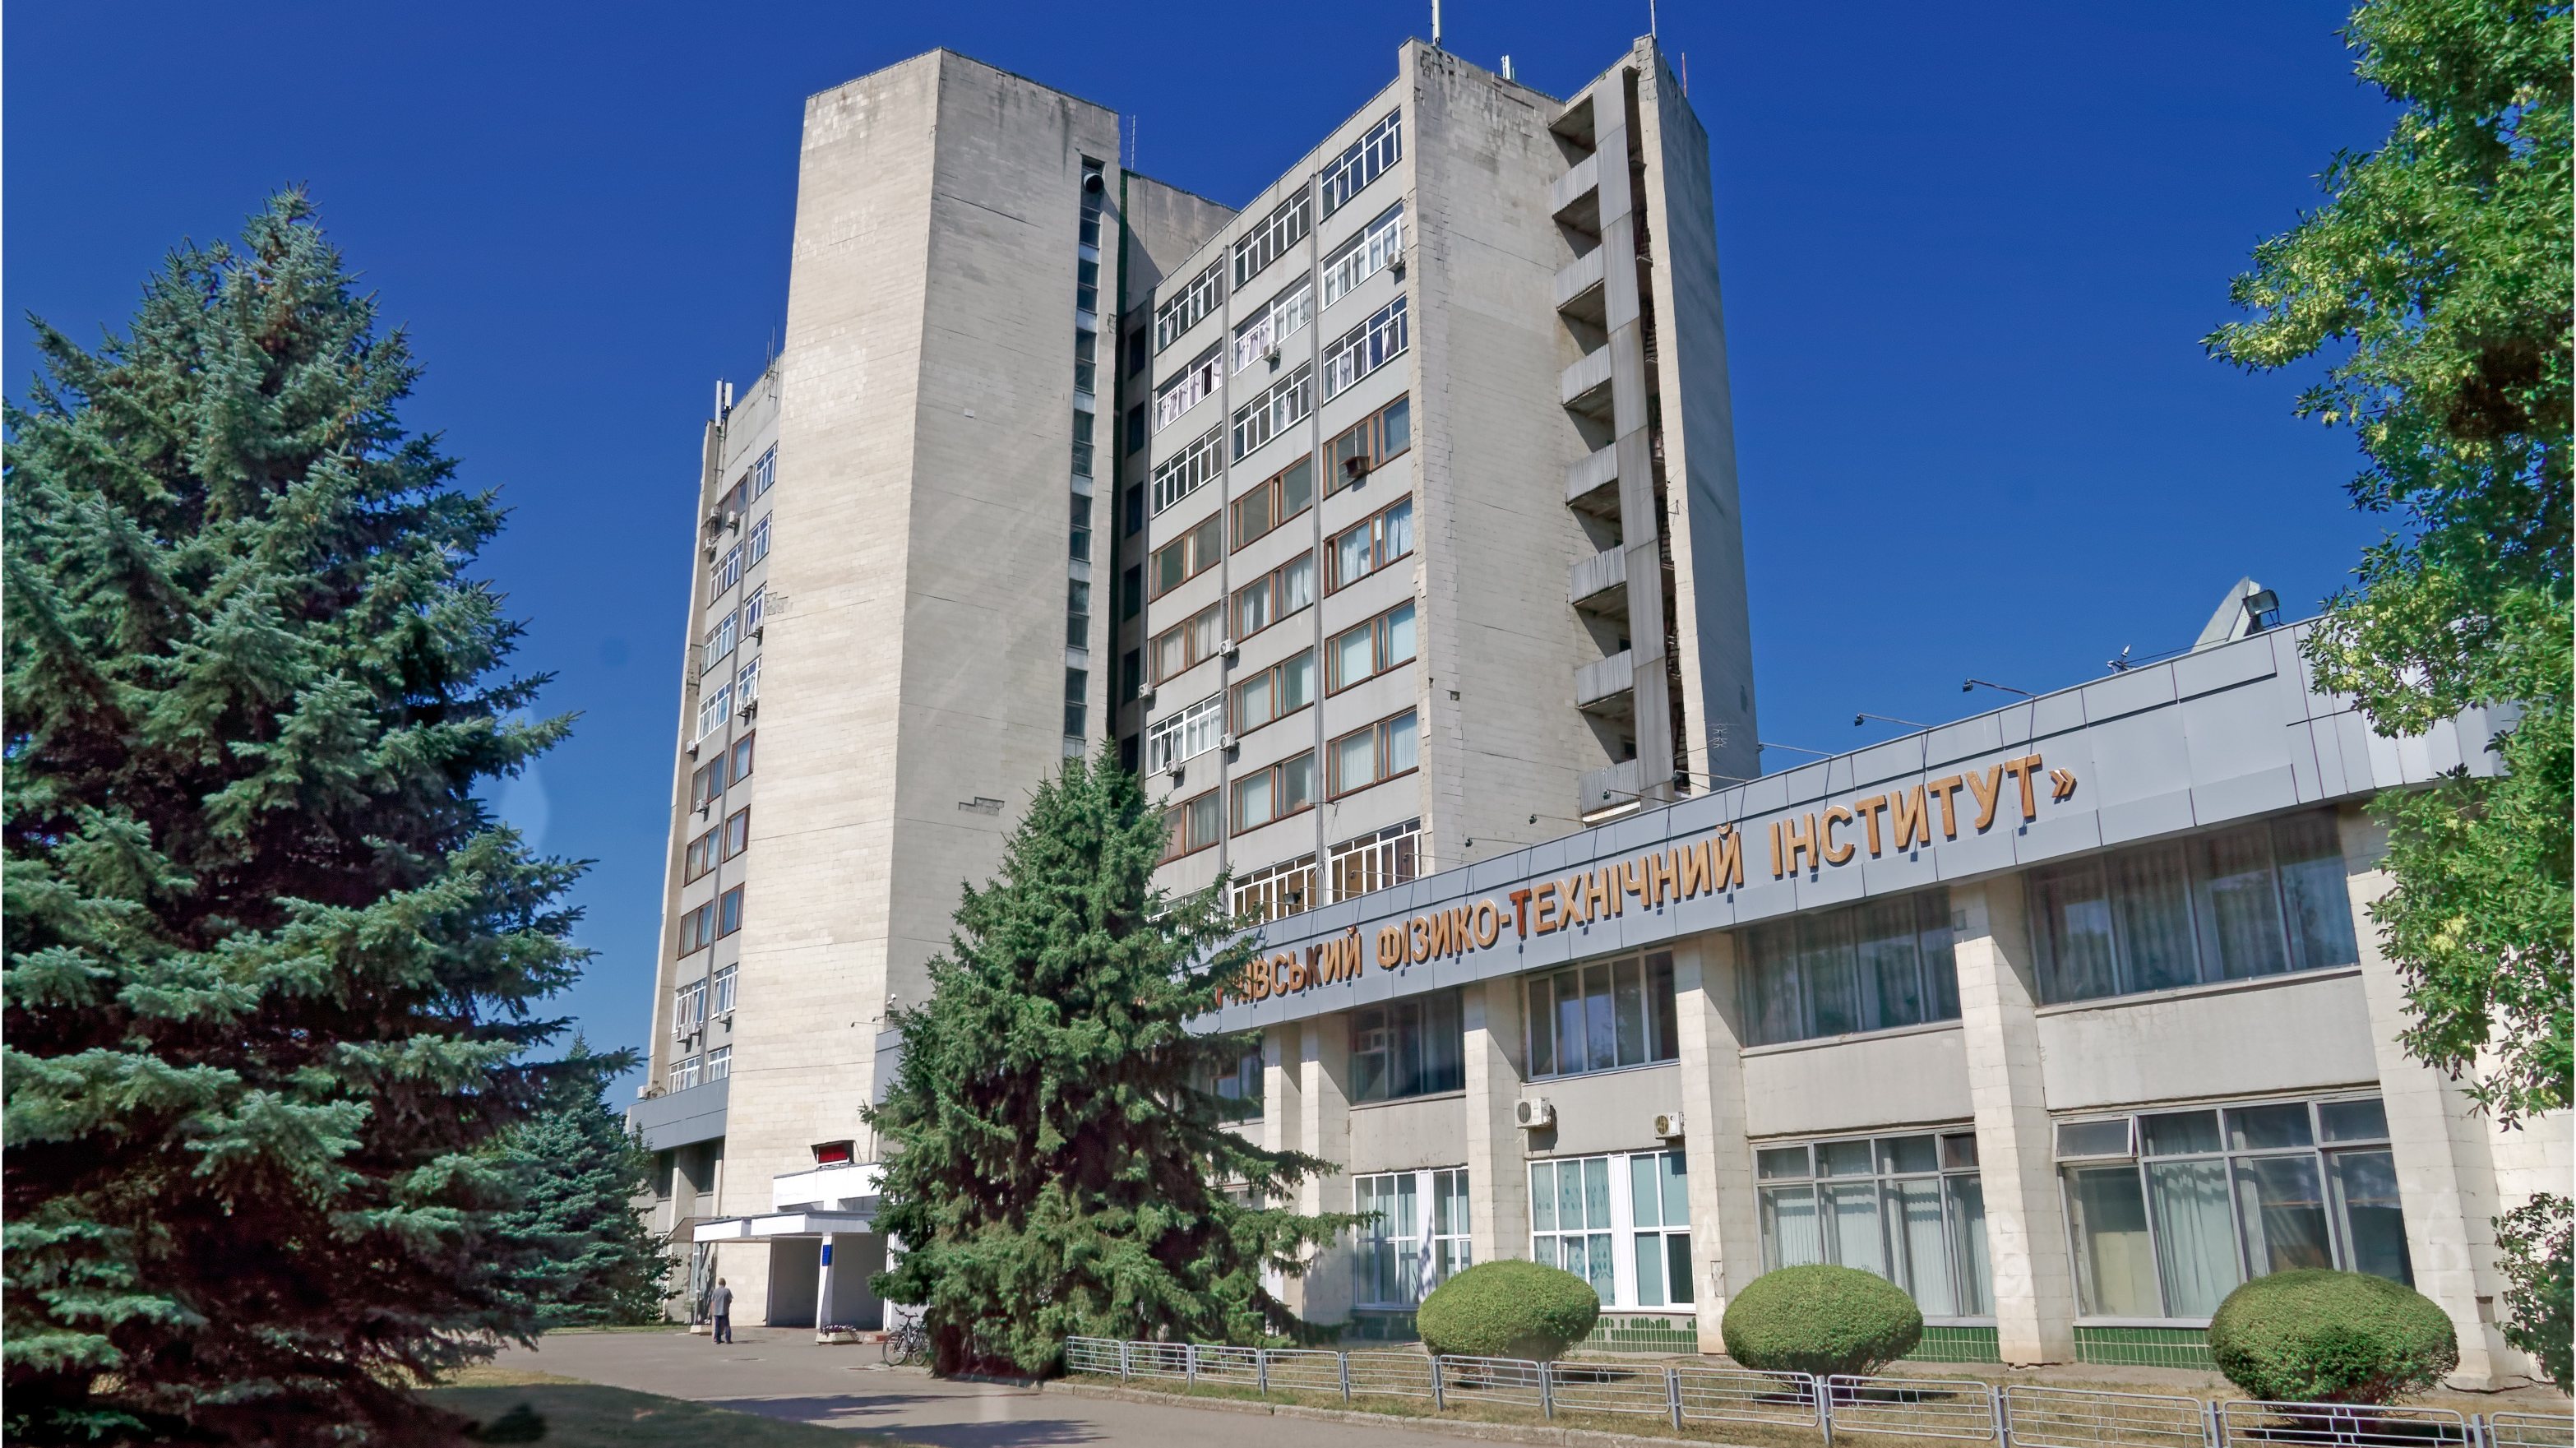 O Instituto de Física e Tecnologia de Kharkiv alberga uma instalação de pesquisa nuclear designada Neutron Source